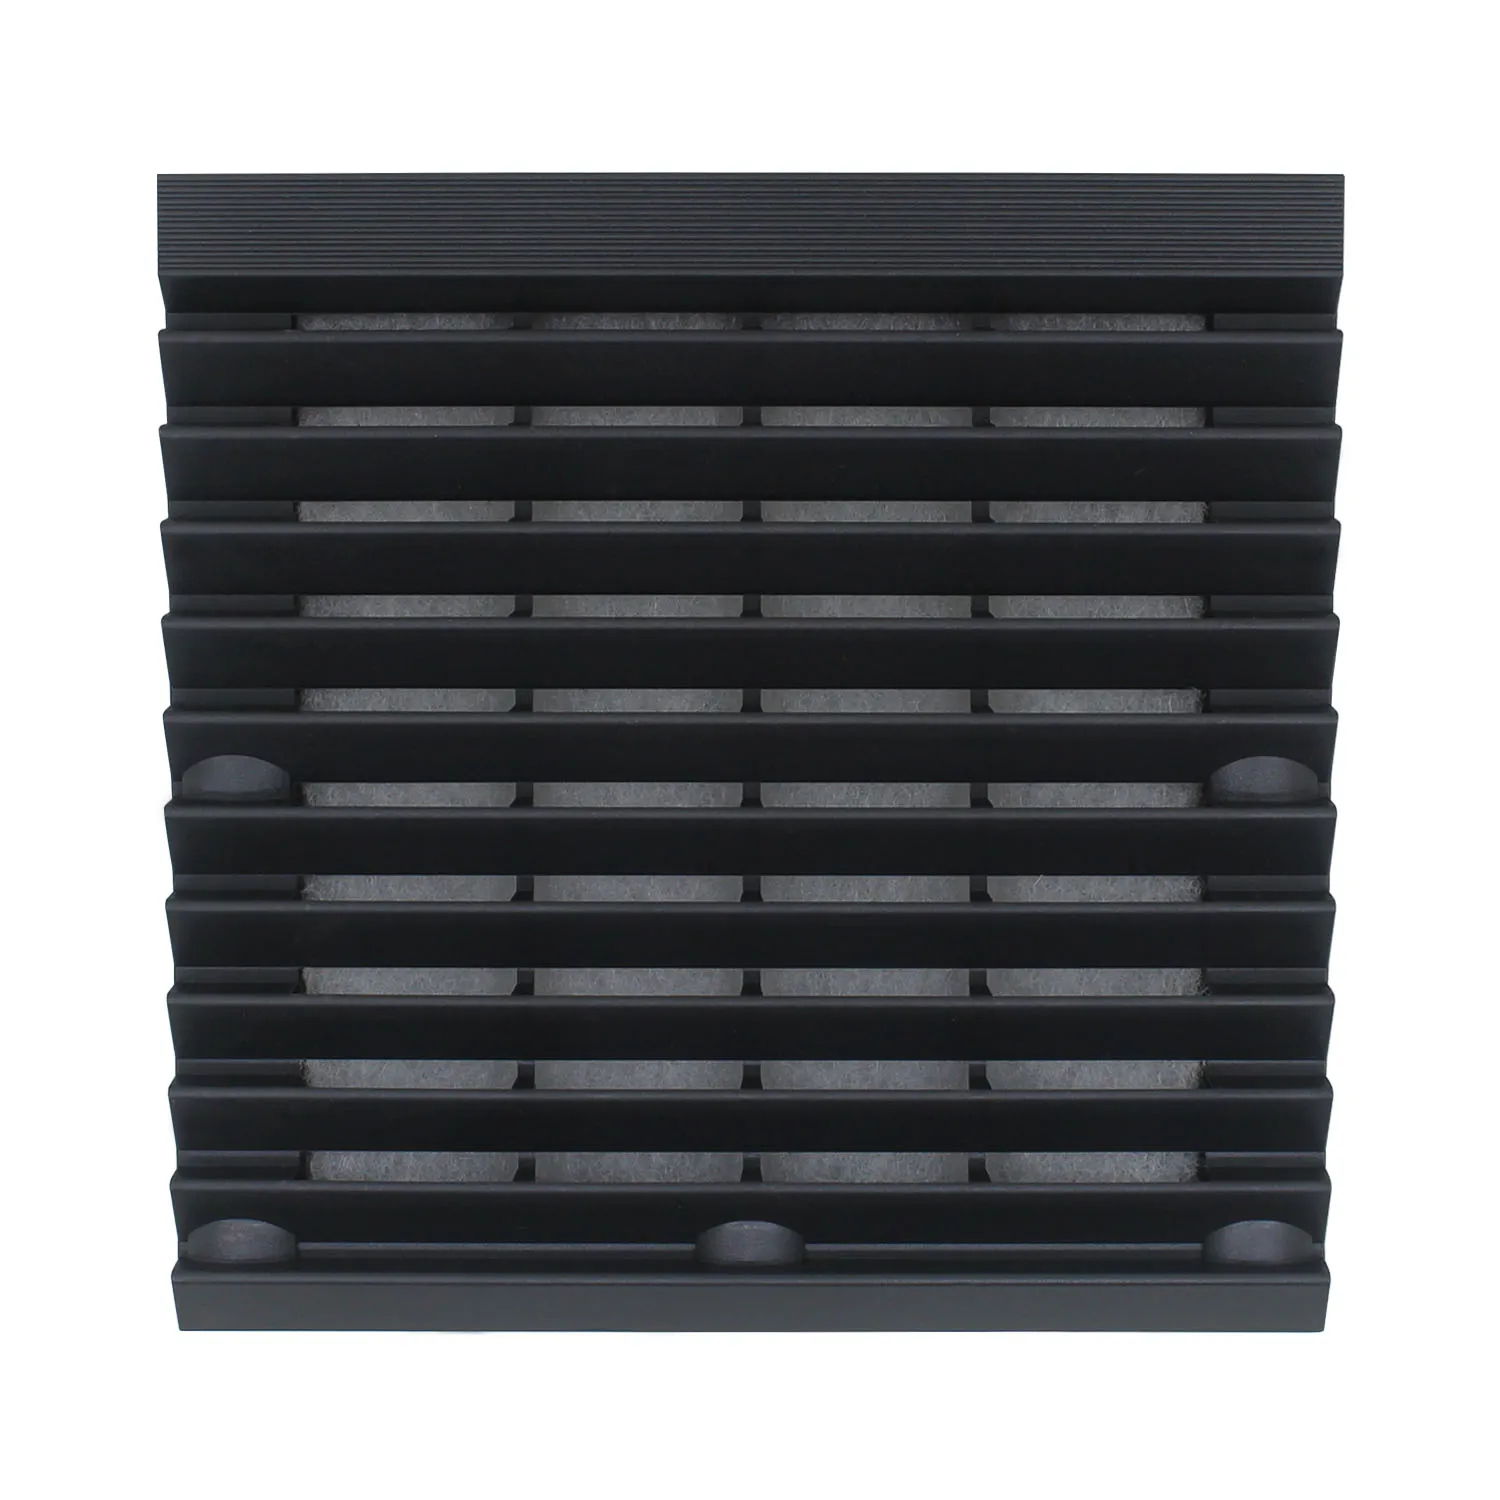 Комплект шкафов Жалюзи Вентиляционная решетка Система вентиляции воздуха Фильтр вентилятора Пылезащитные жалюзи Вентиляционный фильтр